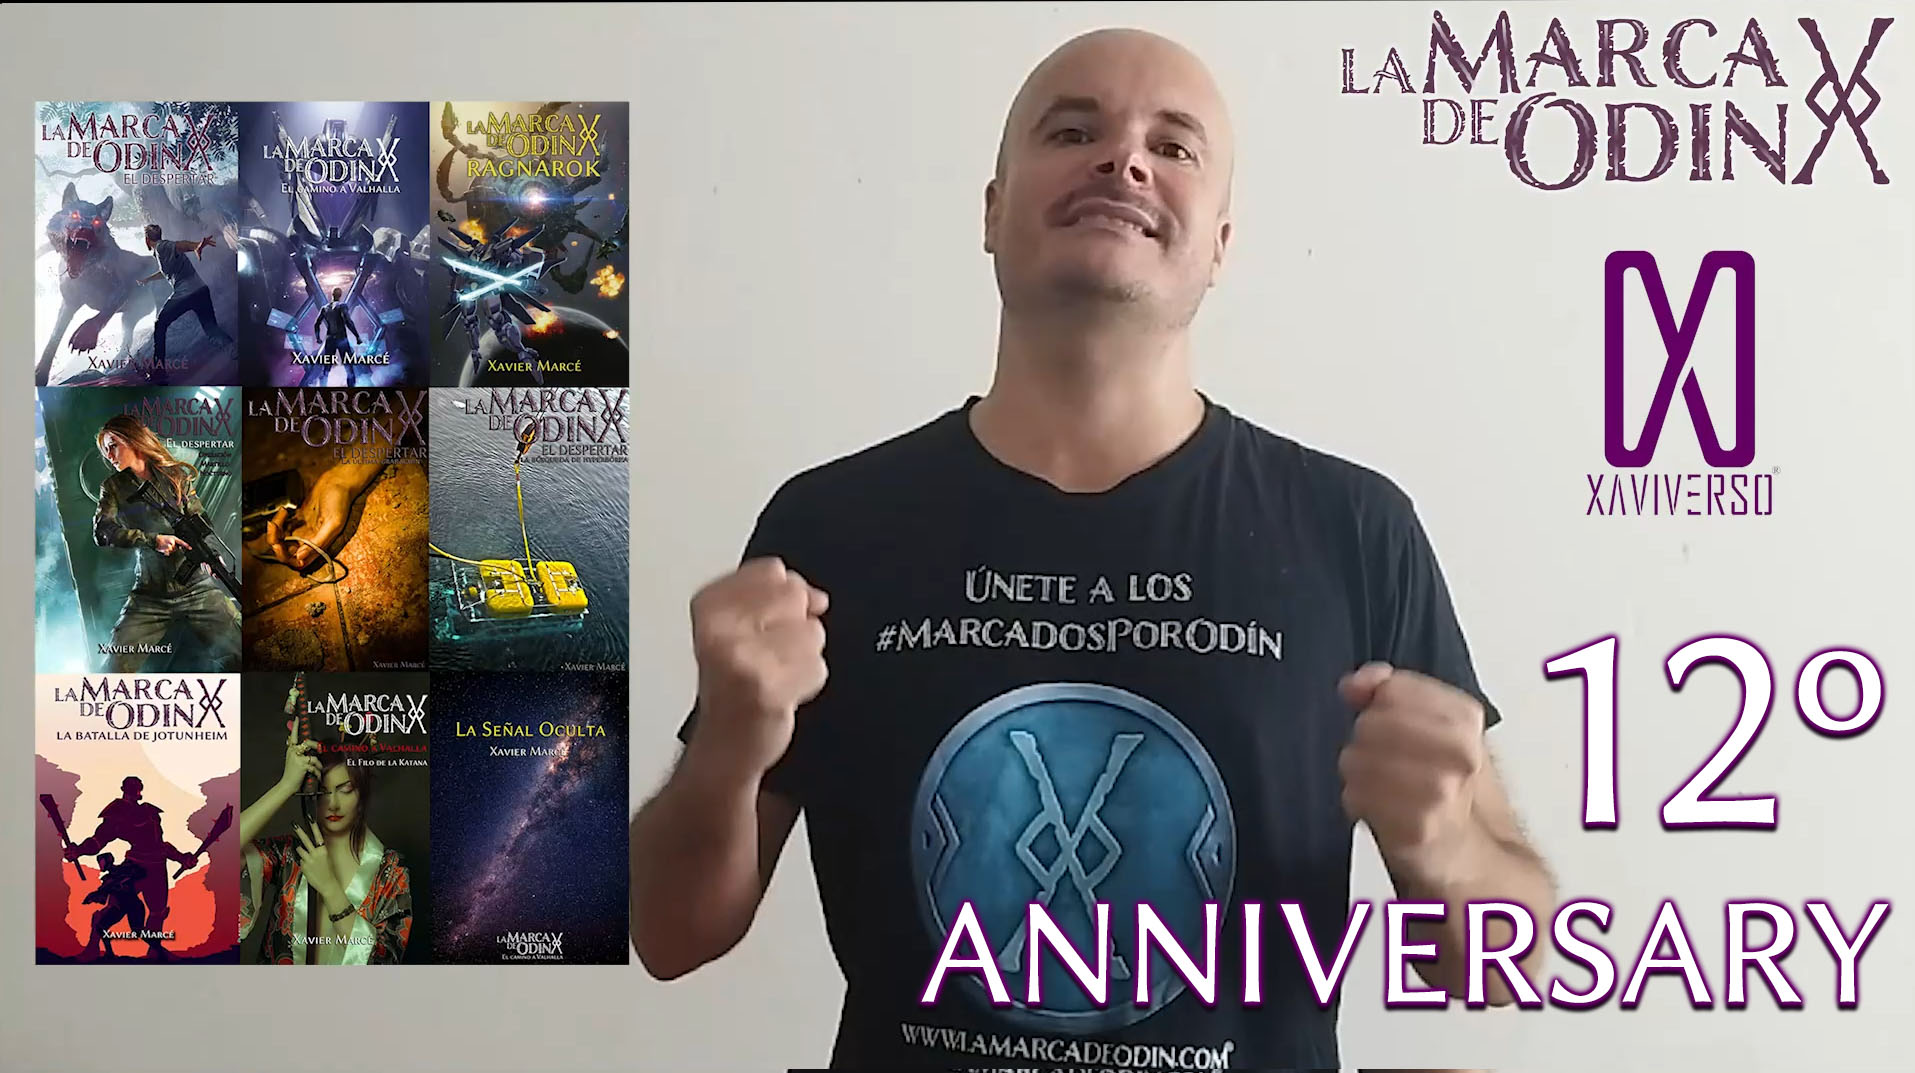 Author Xavier Marce celebrates Mark of Odin 12th anniversary